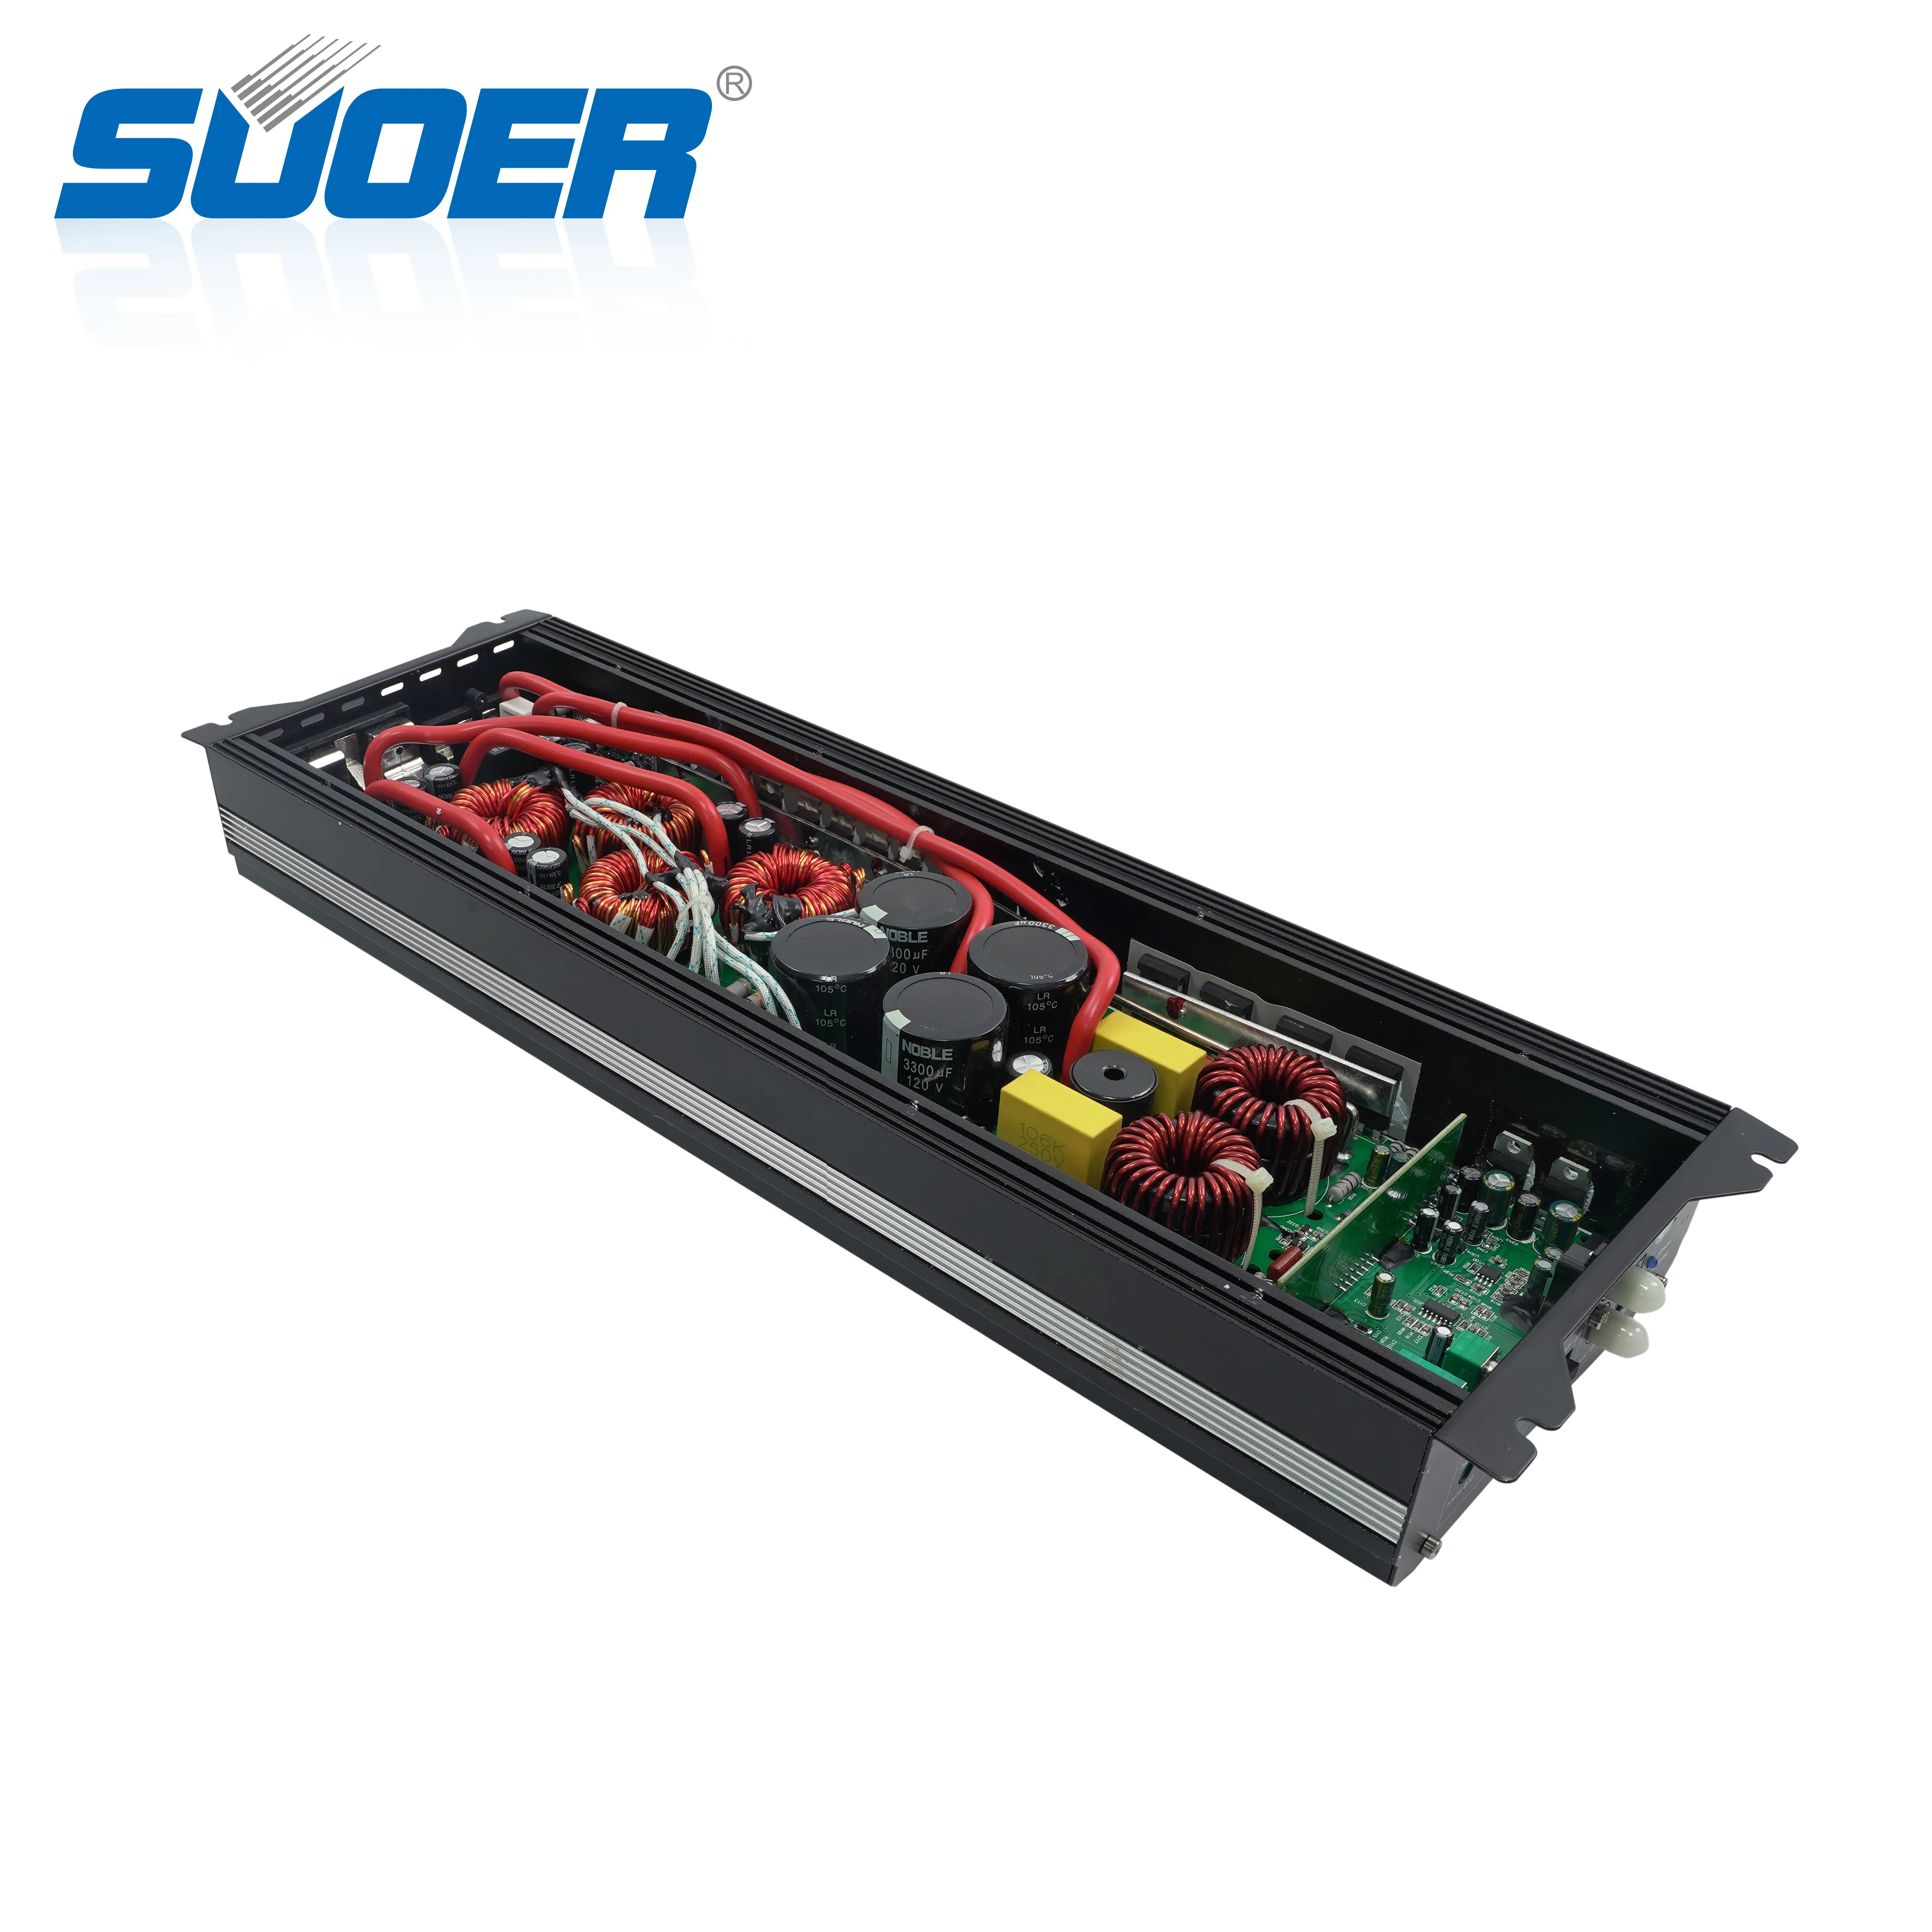 Suoer CL-5K high power full range 1*5000 watts rms power amplifier mono channel class d car amplifier